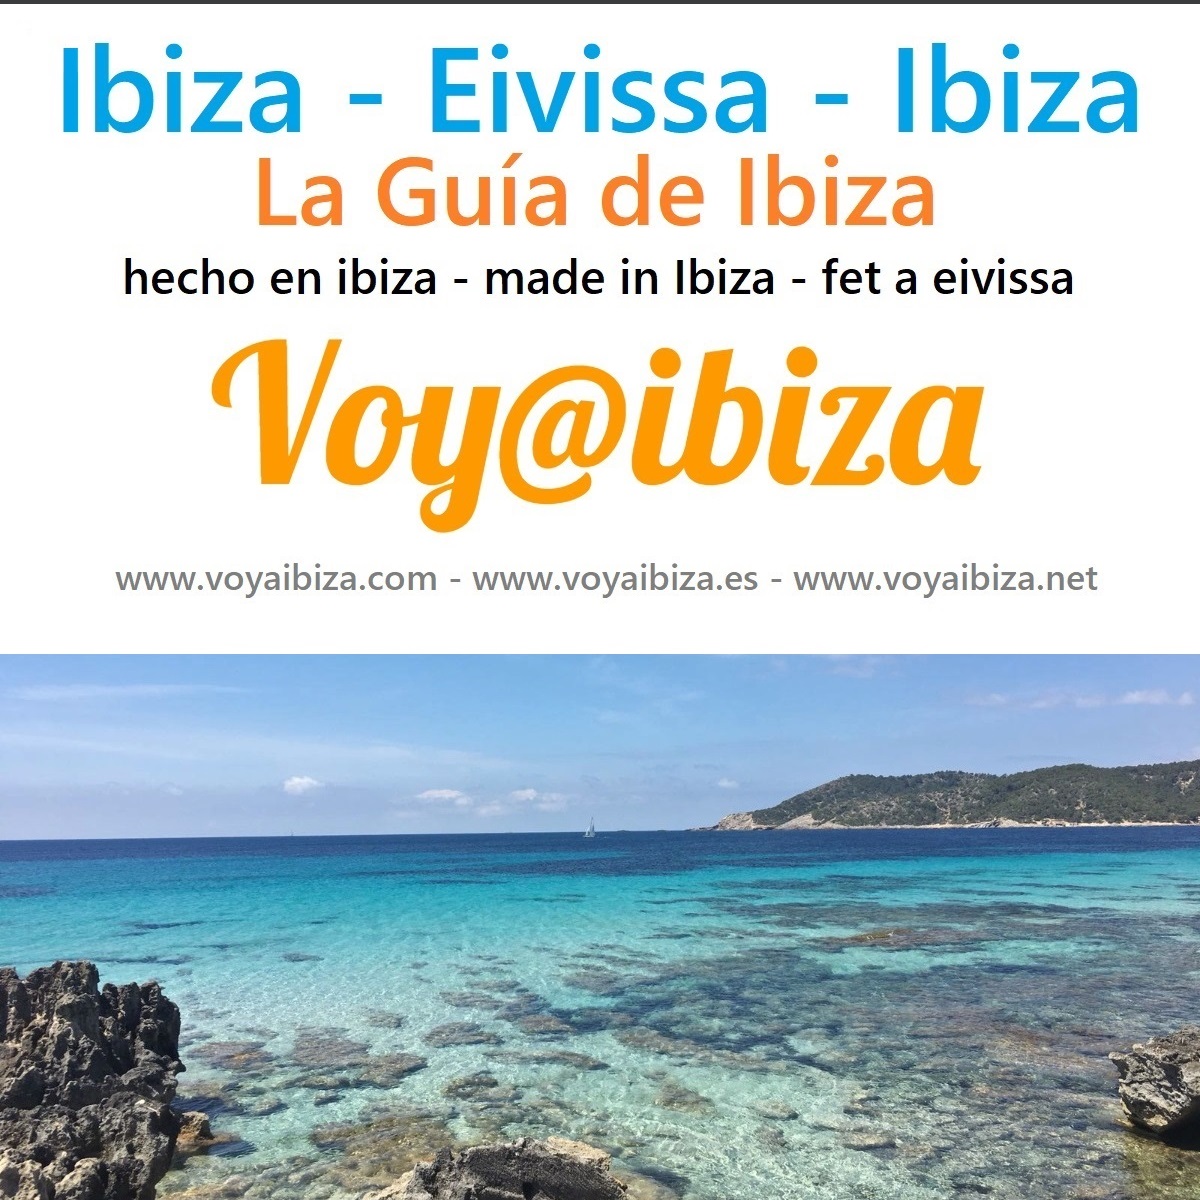 VoyaIbiza -Voy a Ibiza- Guía de la isla - Forum Travel Web Sites